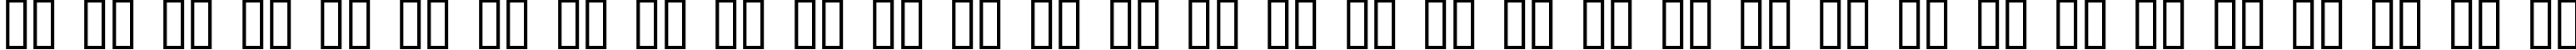 Пример написания русского алфавита шрифтом Parkvane